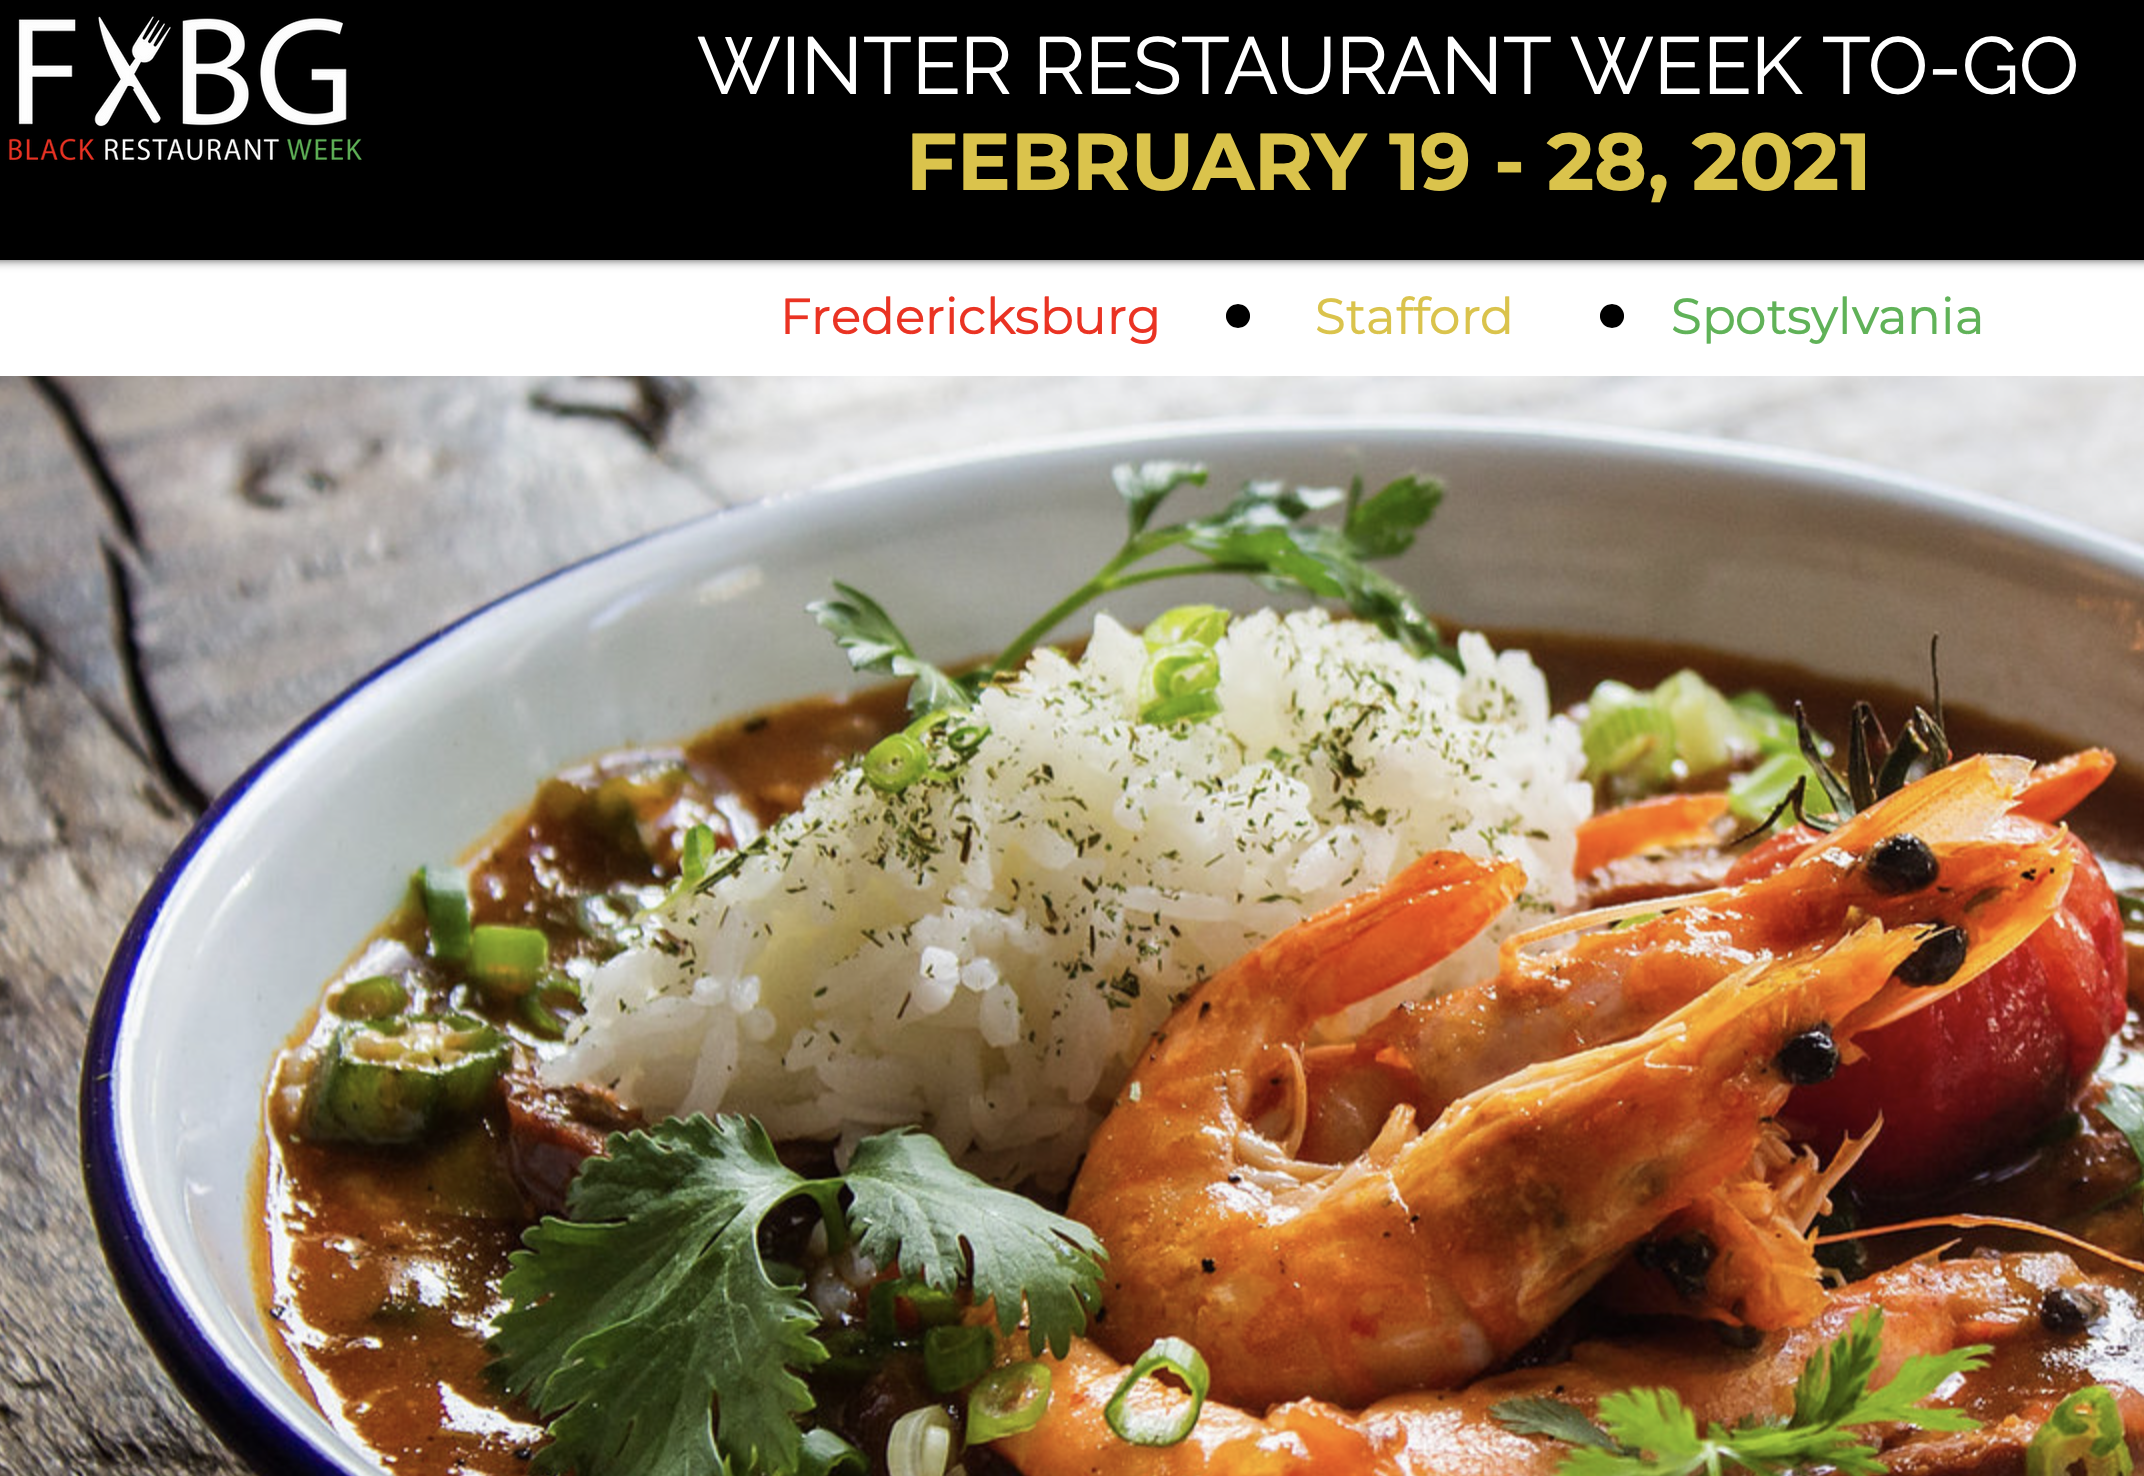 FXBG Black Restaurant Week set for Feb. 19-28